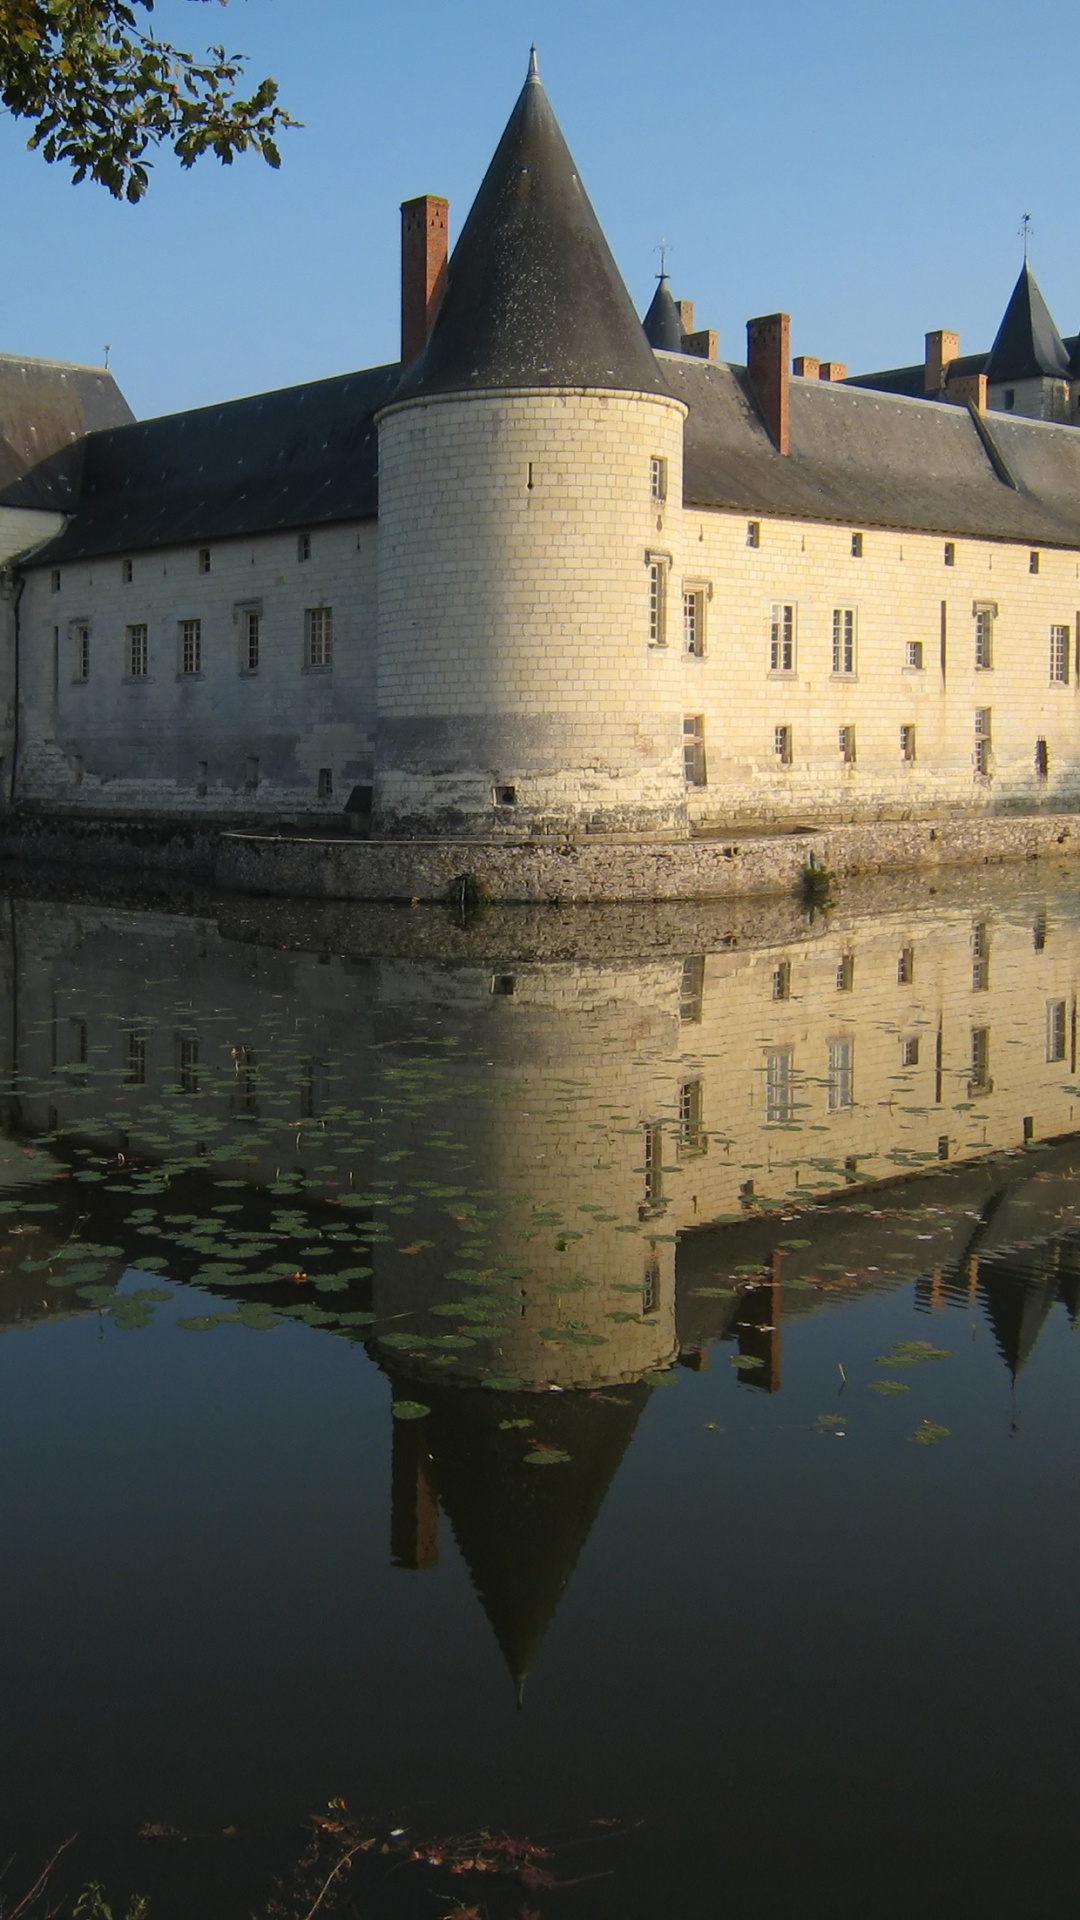 Château, Réflexion, du Château D'eau, Voie Navigable, Fossé. Wallpaper in 1080x1920 Resolution